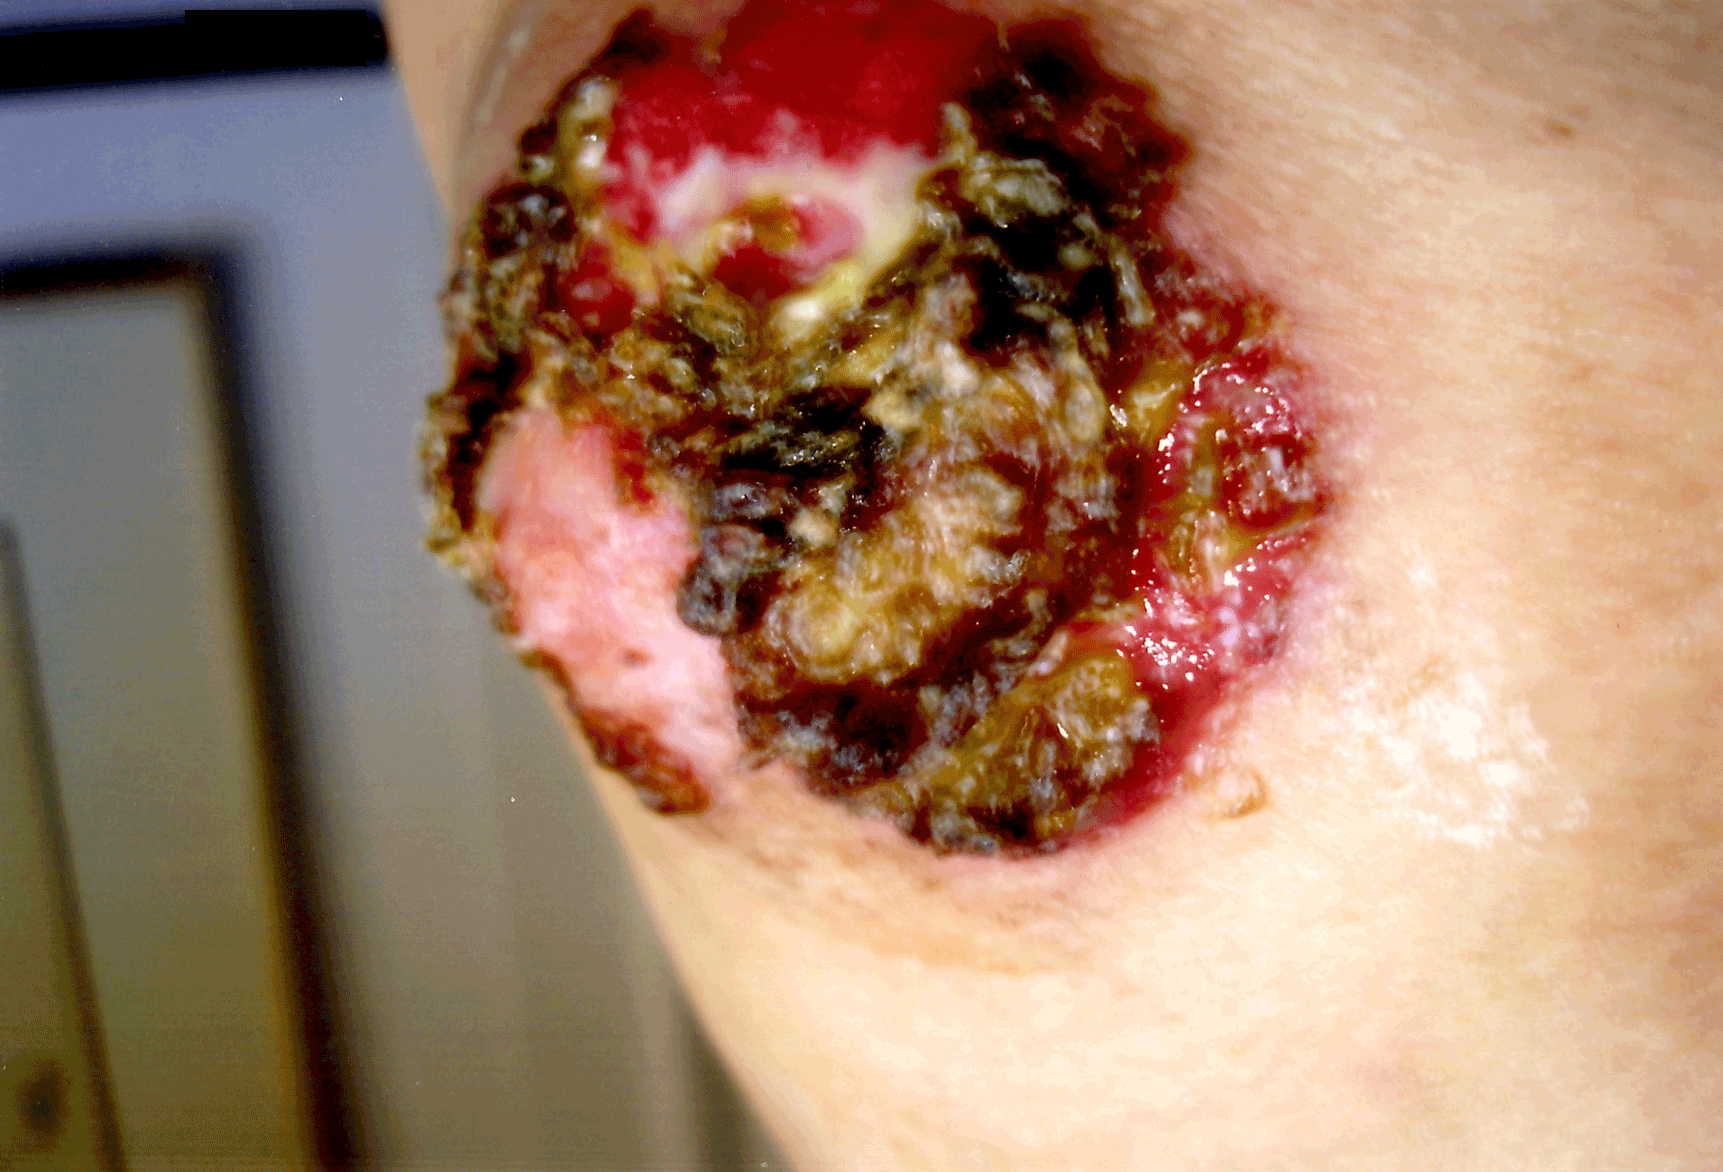 'Paget-Disease' 2007